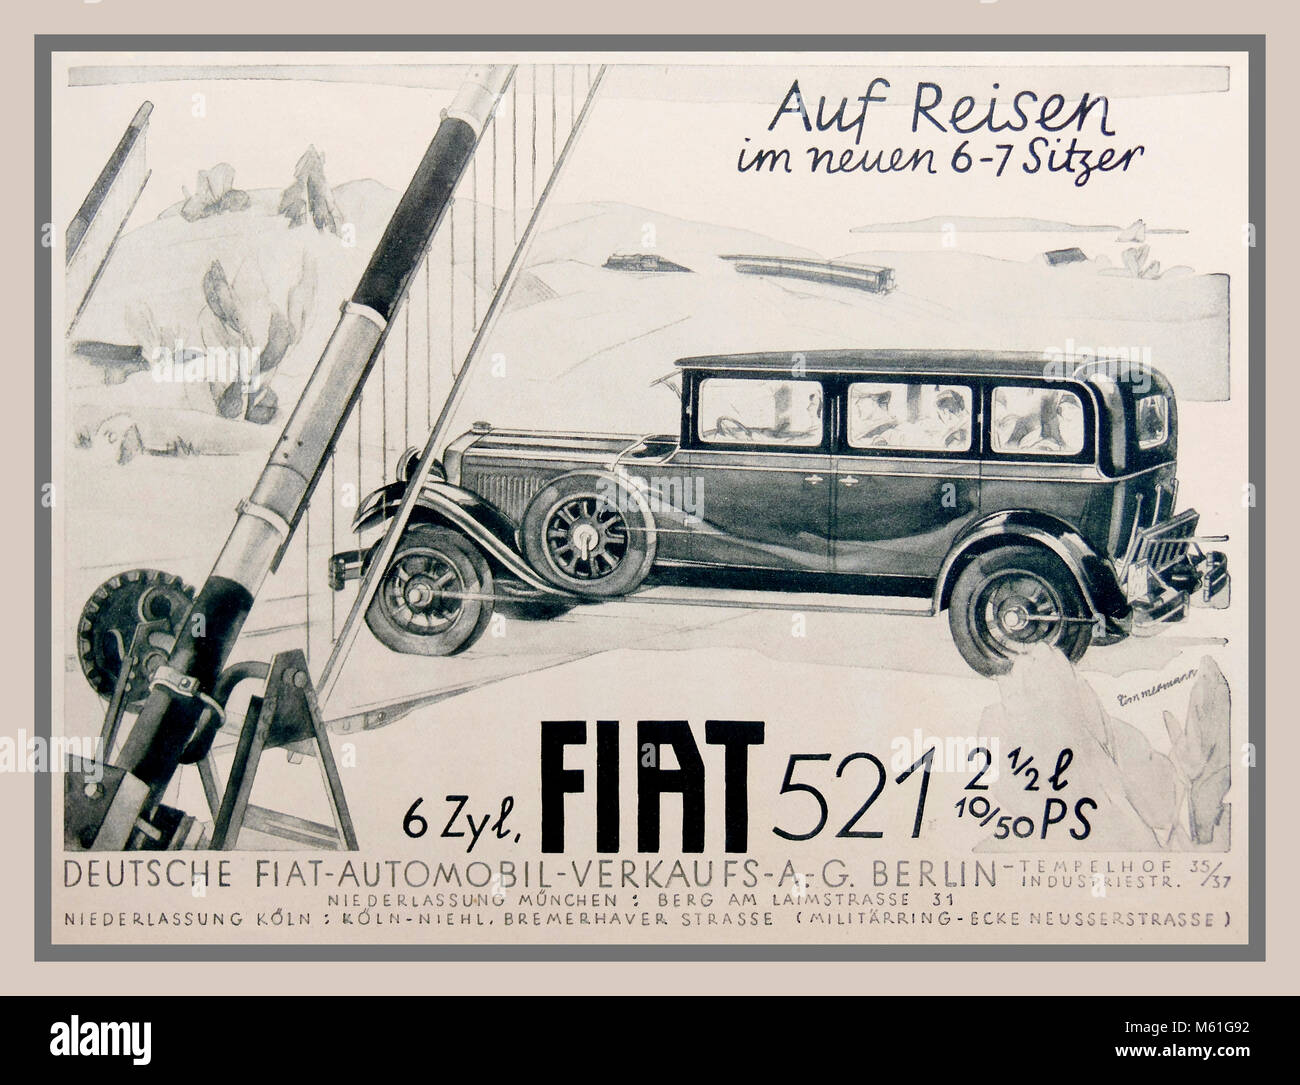 Vintage italien Fiat 521 21/2 Litre cylindres berline de luxe 6 Affiche publicitaire 1920 Berlin Allemagne Banque D'Images